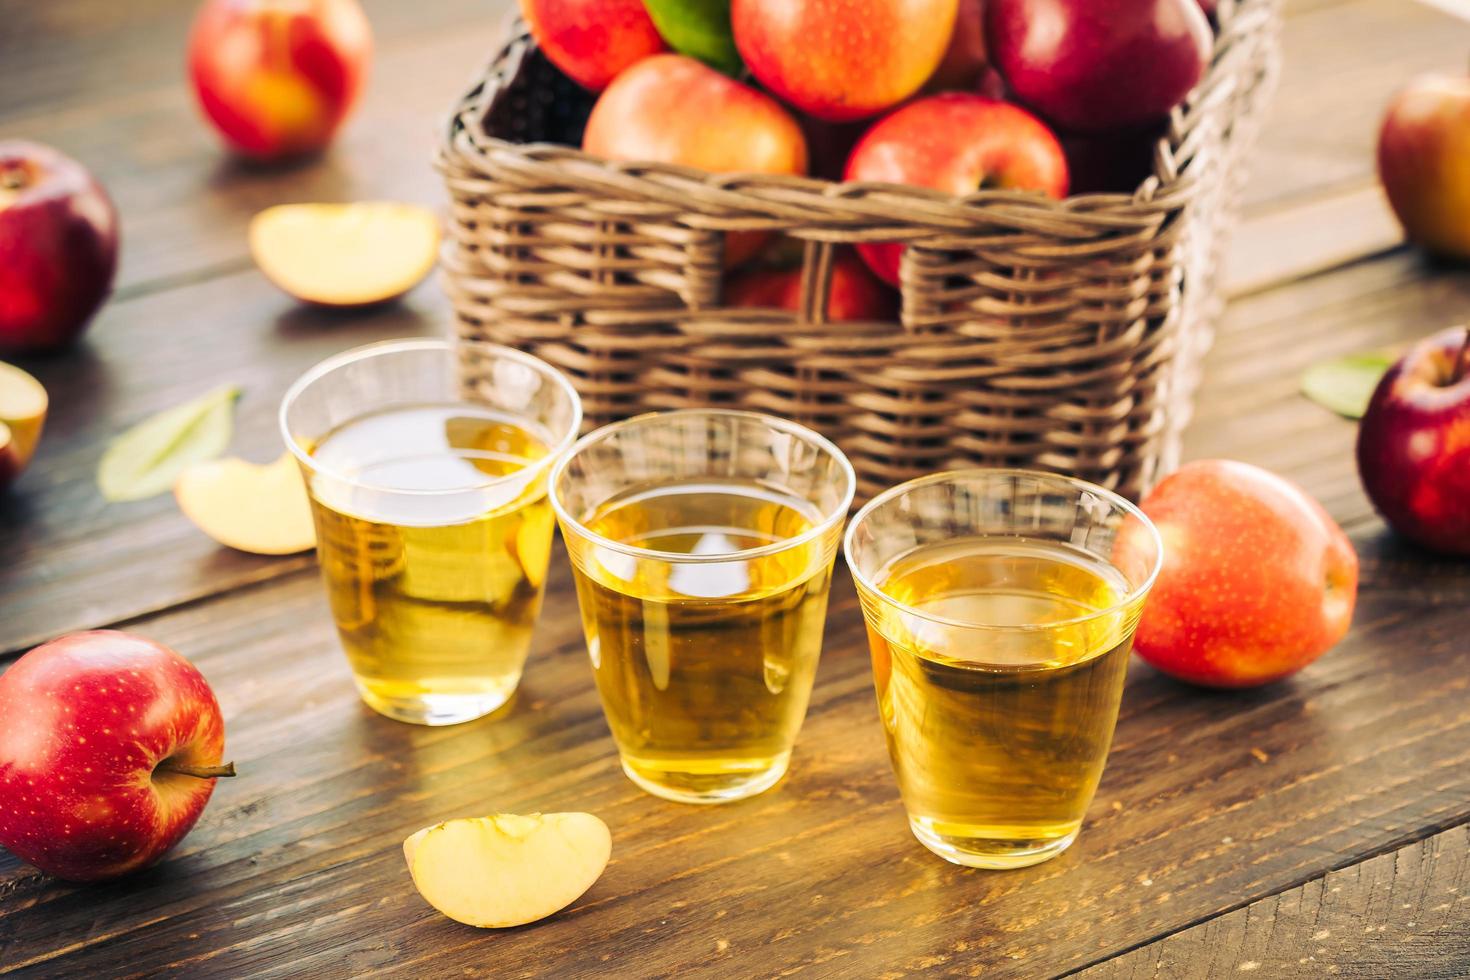 suco de maçã em copos e maçãs na cesta foto